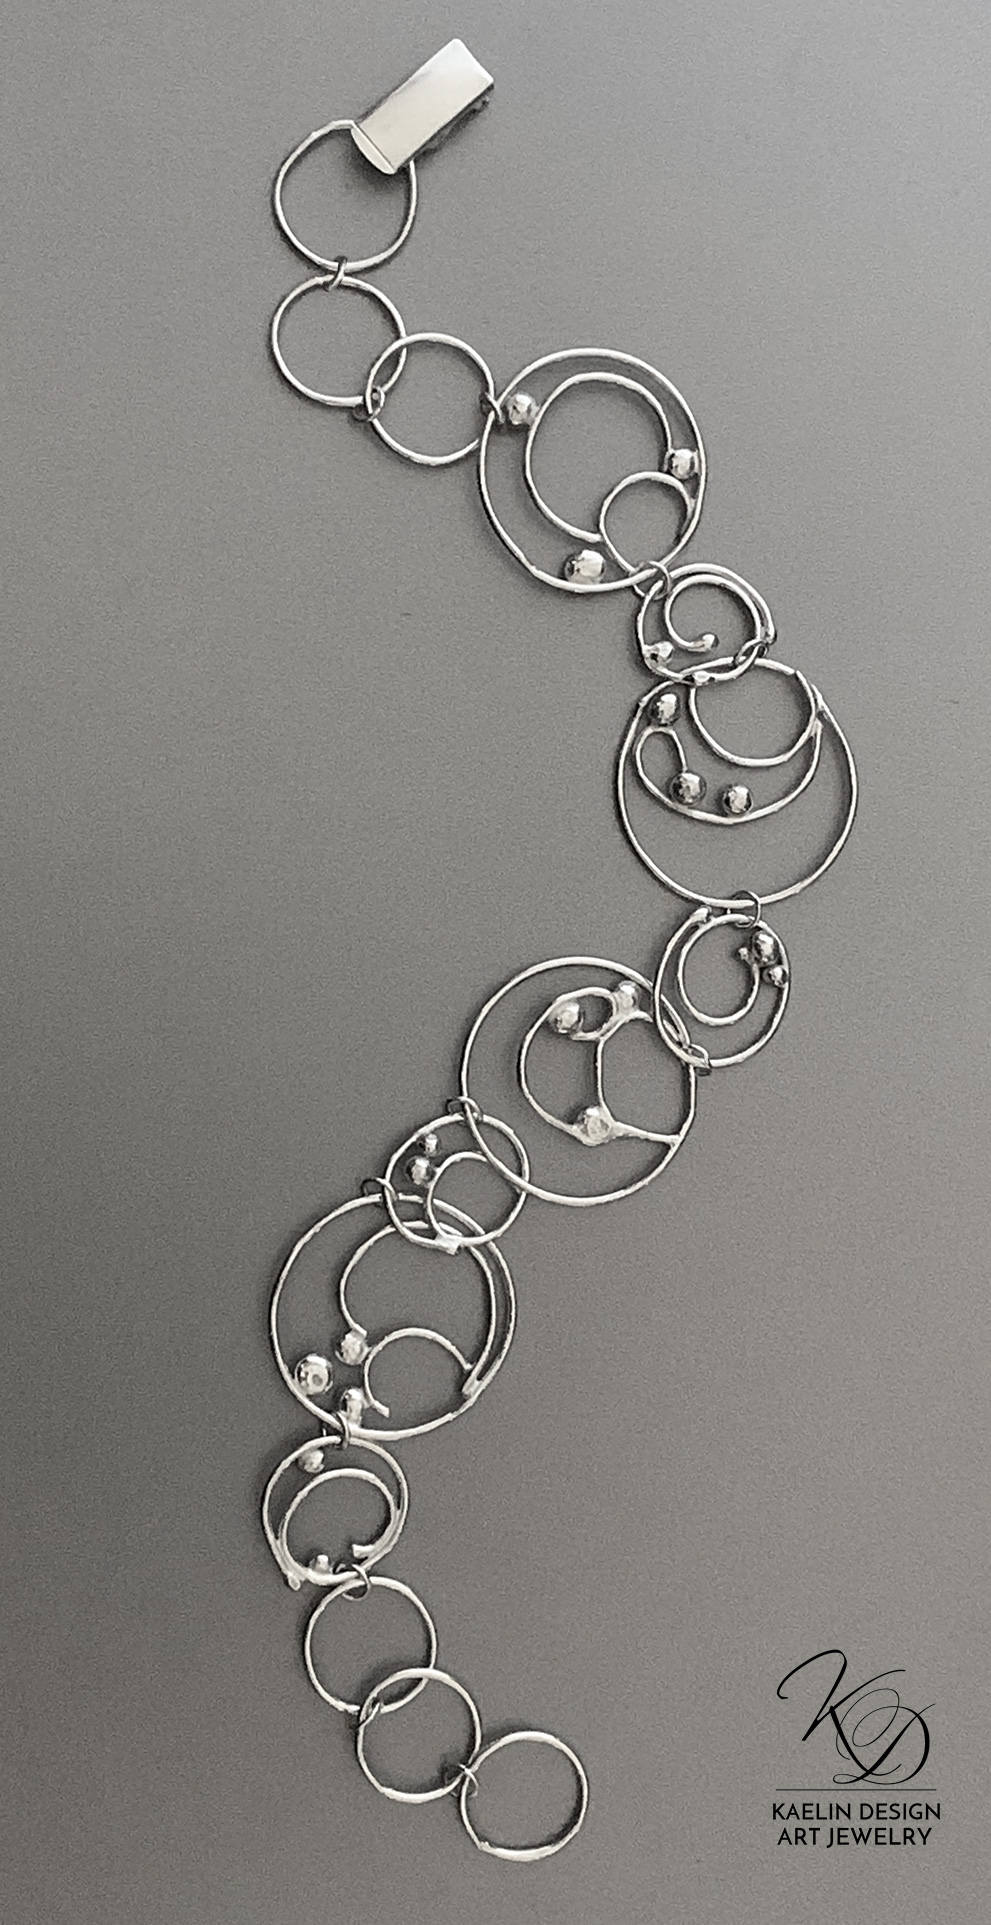 Ocean Bubbles Sterling Silver Art Jewelry Bracelet by Kaelin Design